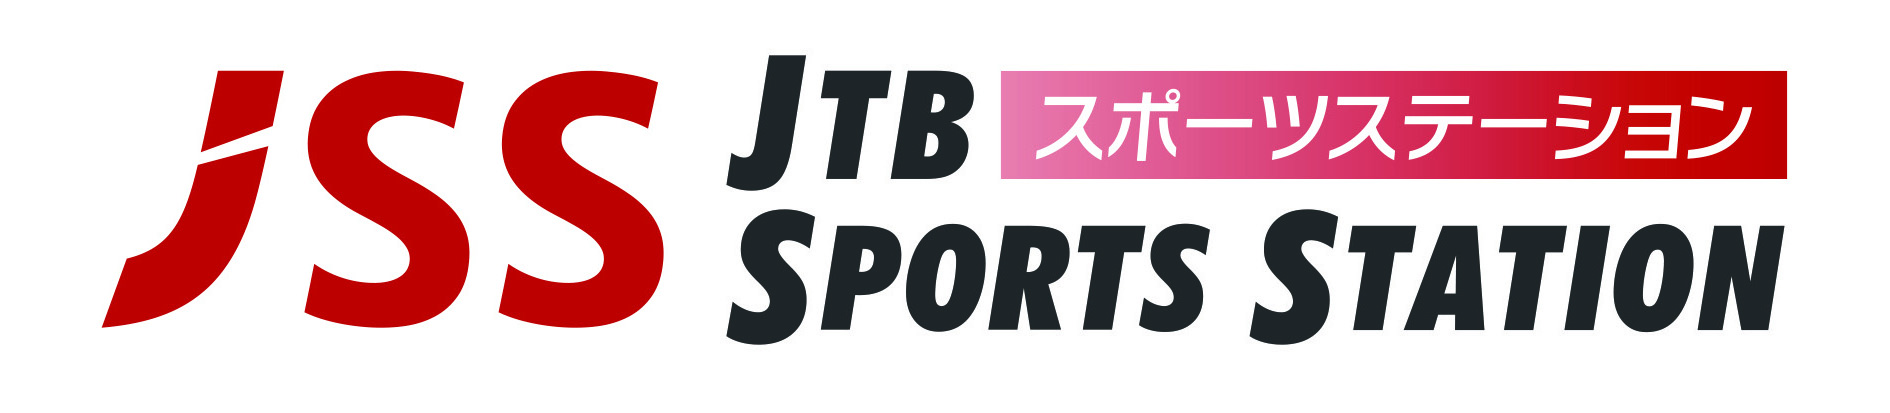 JTB スポーツステーション